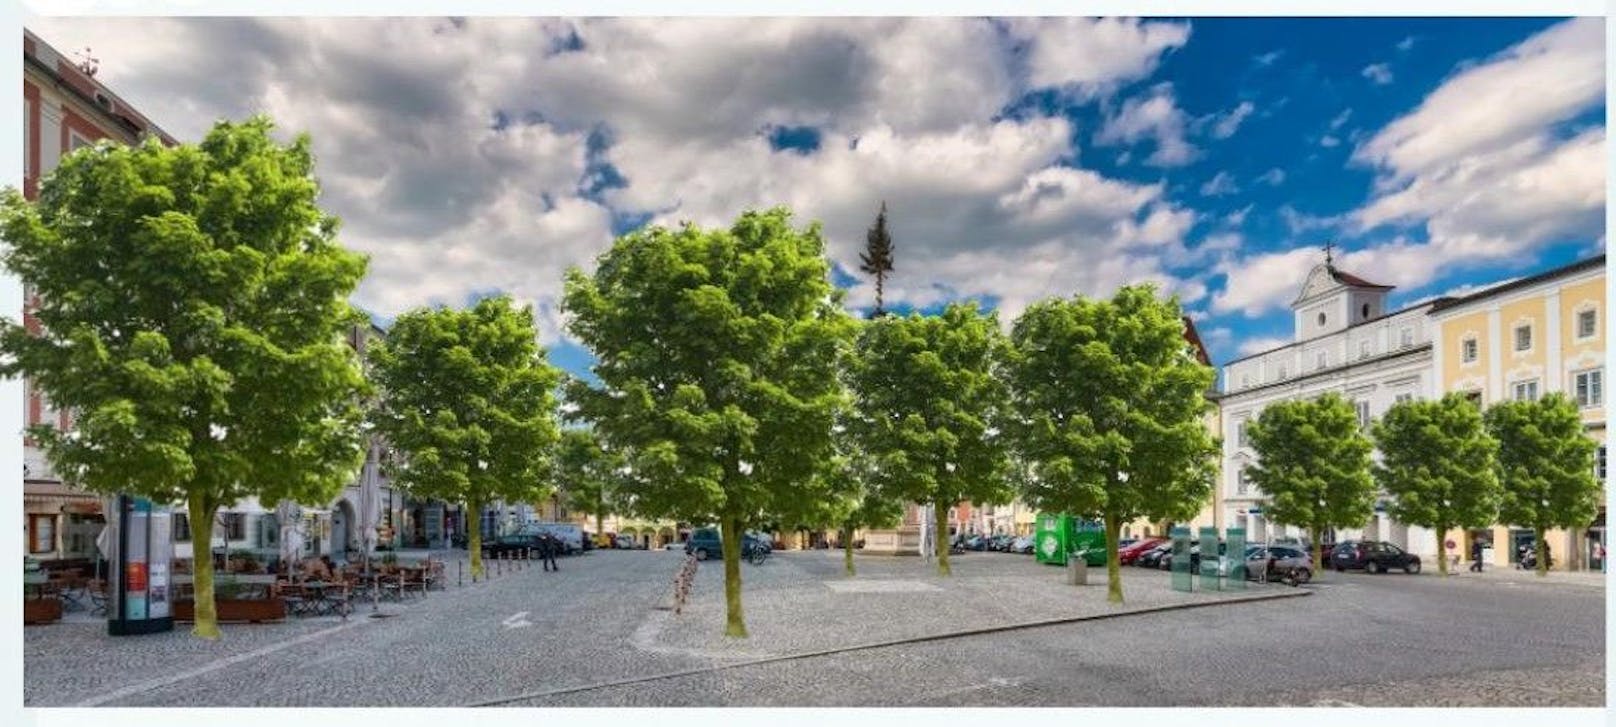 Die Initiative möchte Freistadt gerade in den Sommermonaten zu einer kühlen und naturnahen Stadt machen: Das betrifft auch die Baumpflanzungen am Hauptplatz.